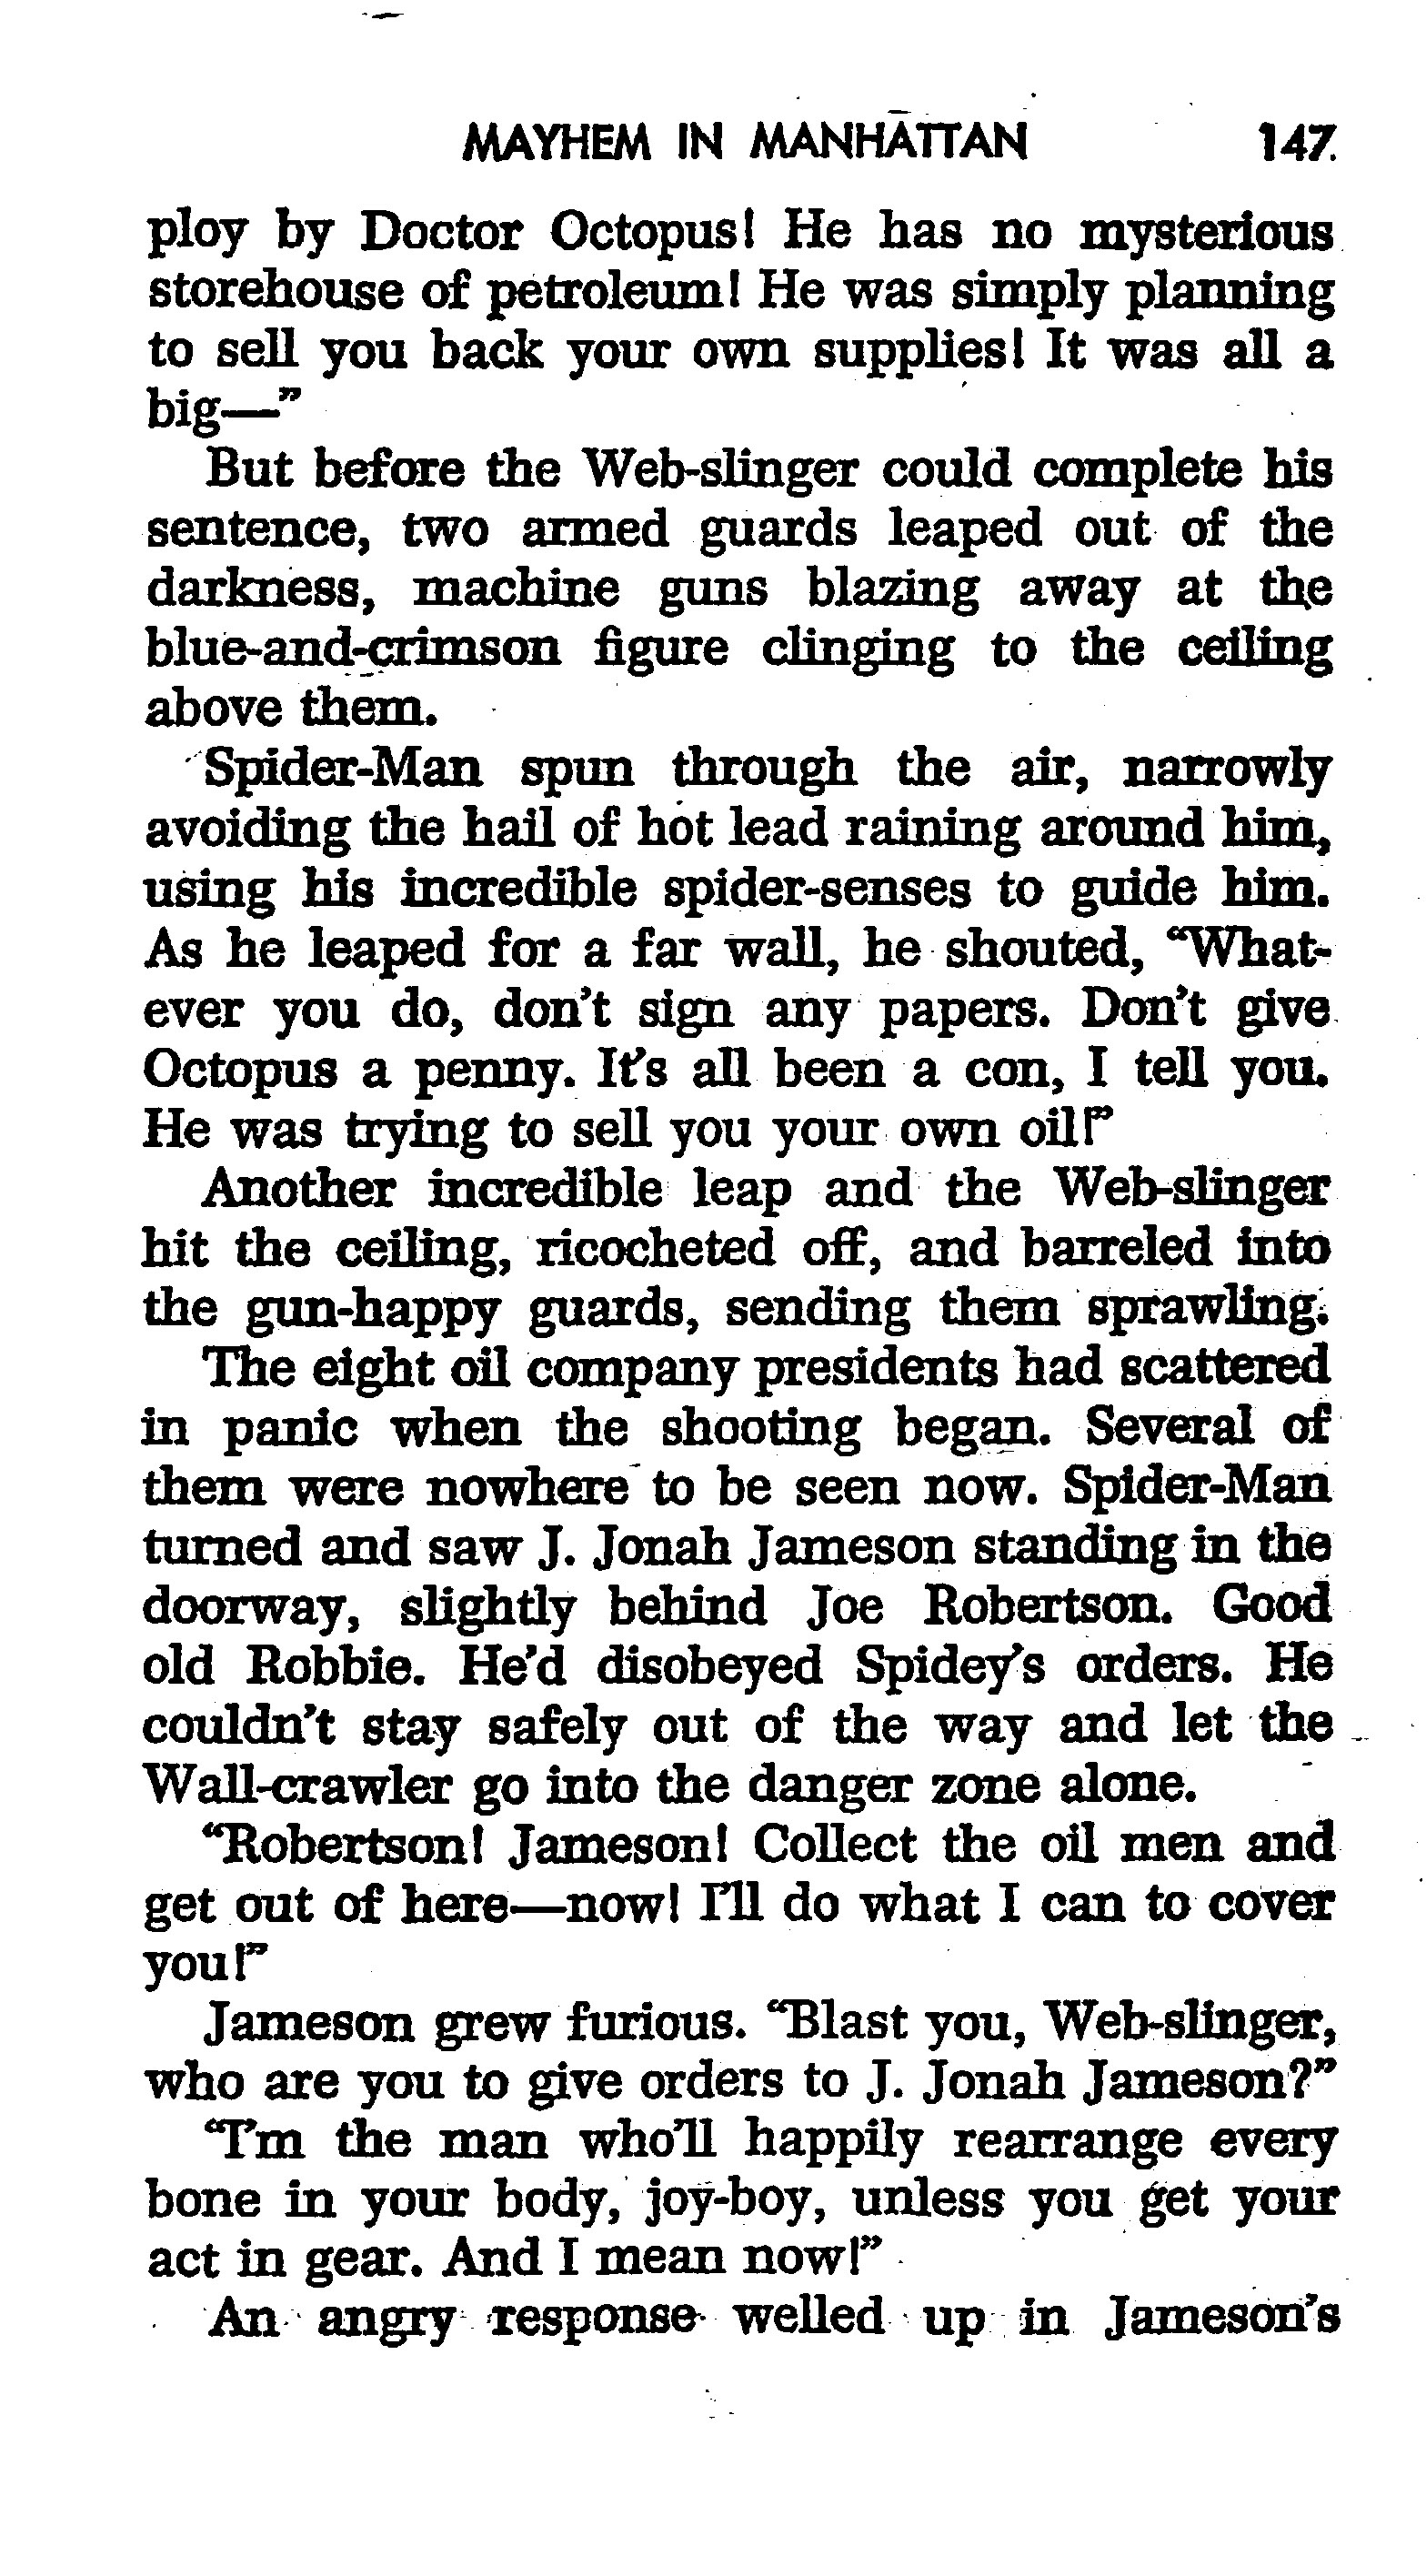 Read online The Amazing Spider-Man: Mayhem in Manhattan comic -  Issue # TPB (Part 2) - 49